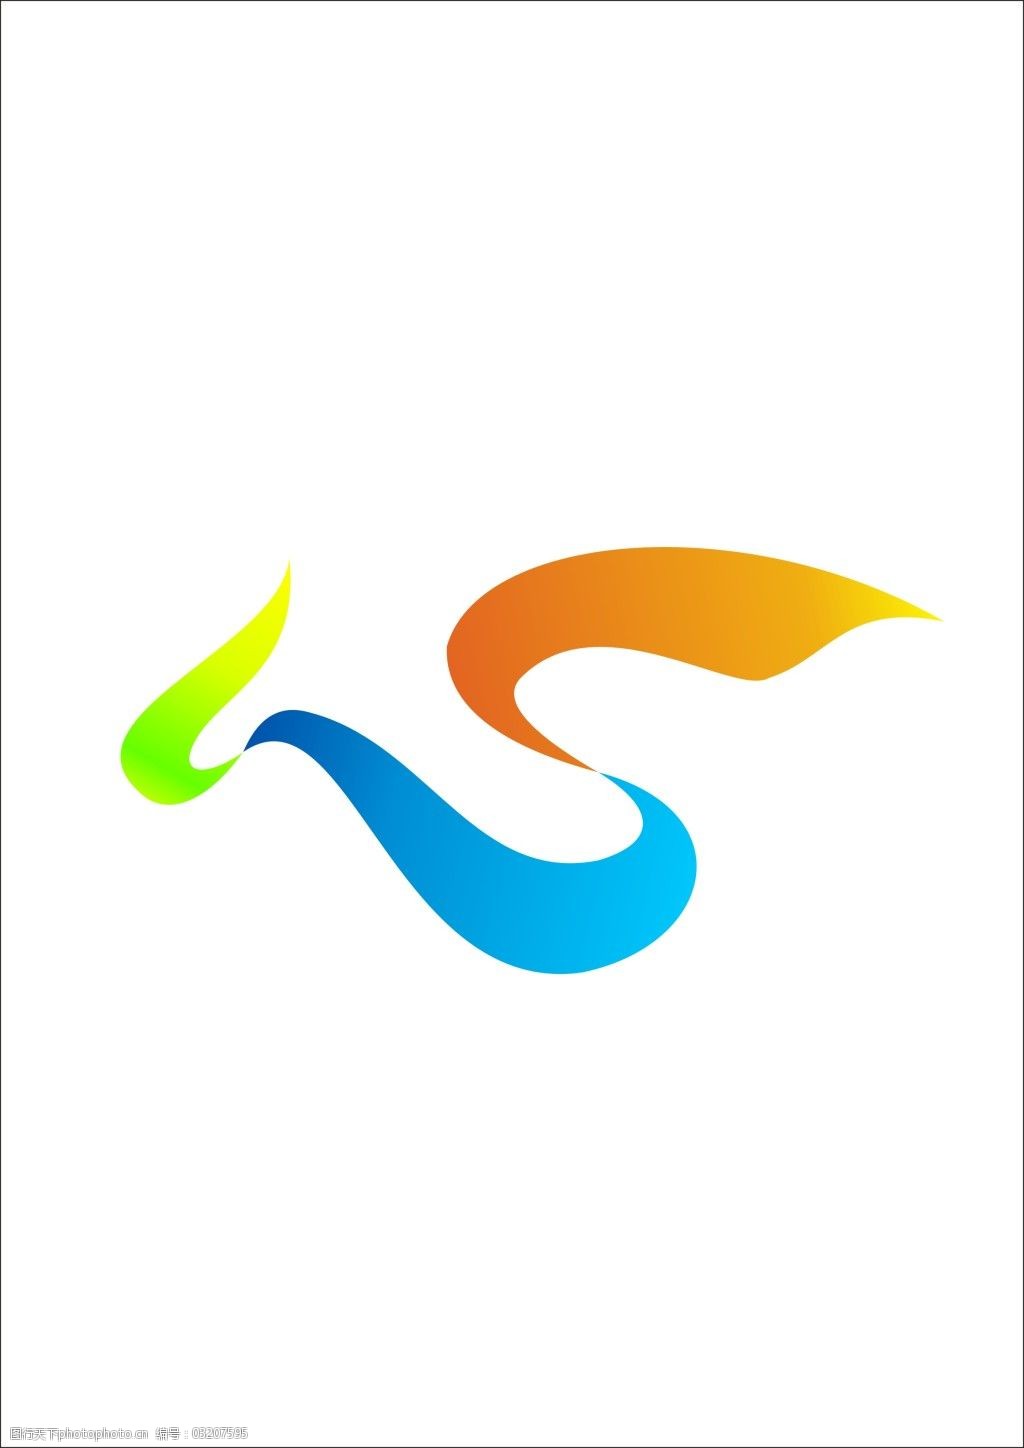 关键词:2010上海世博会志愿者标志免费下载 2010 飘带 色彩 上海 世博